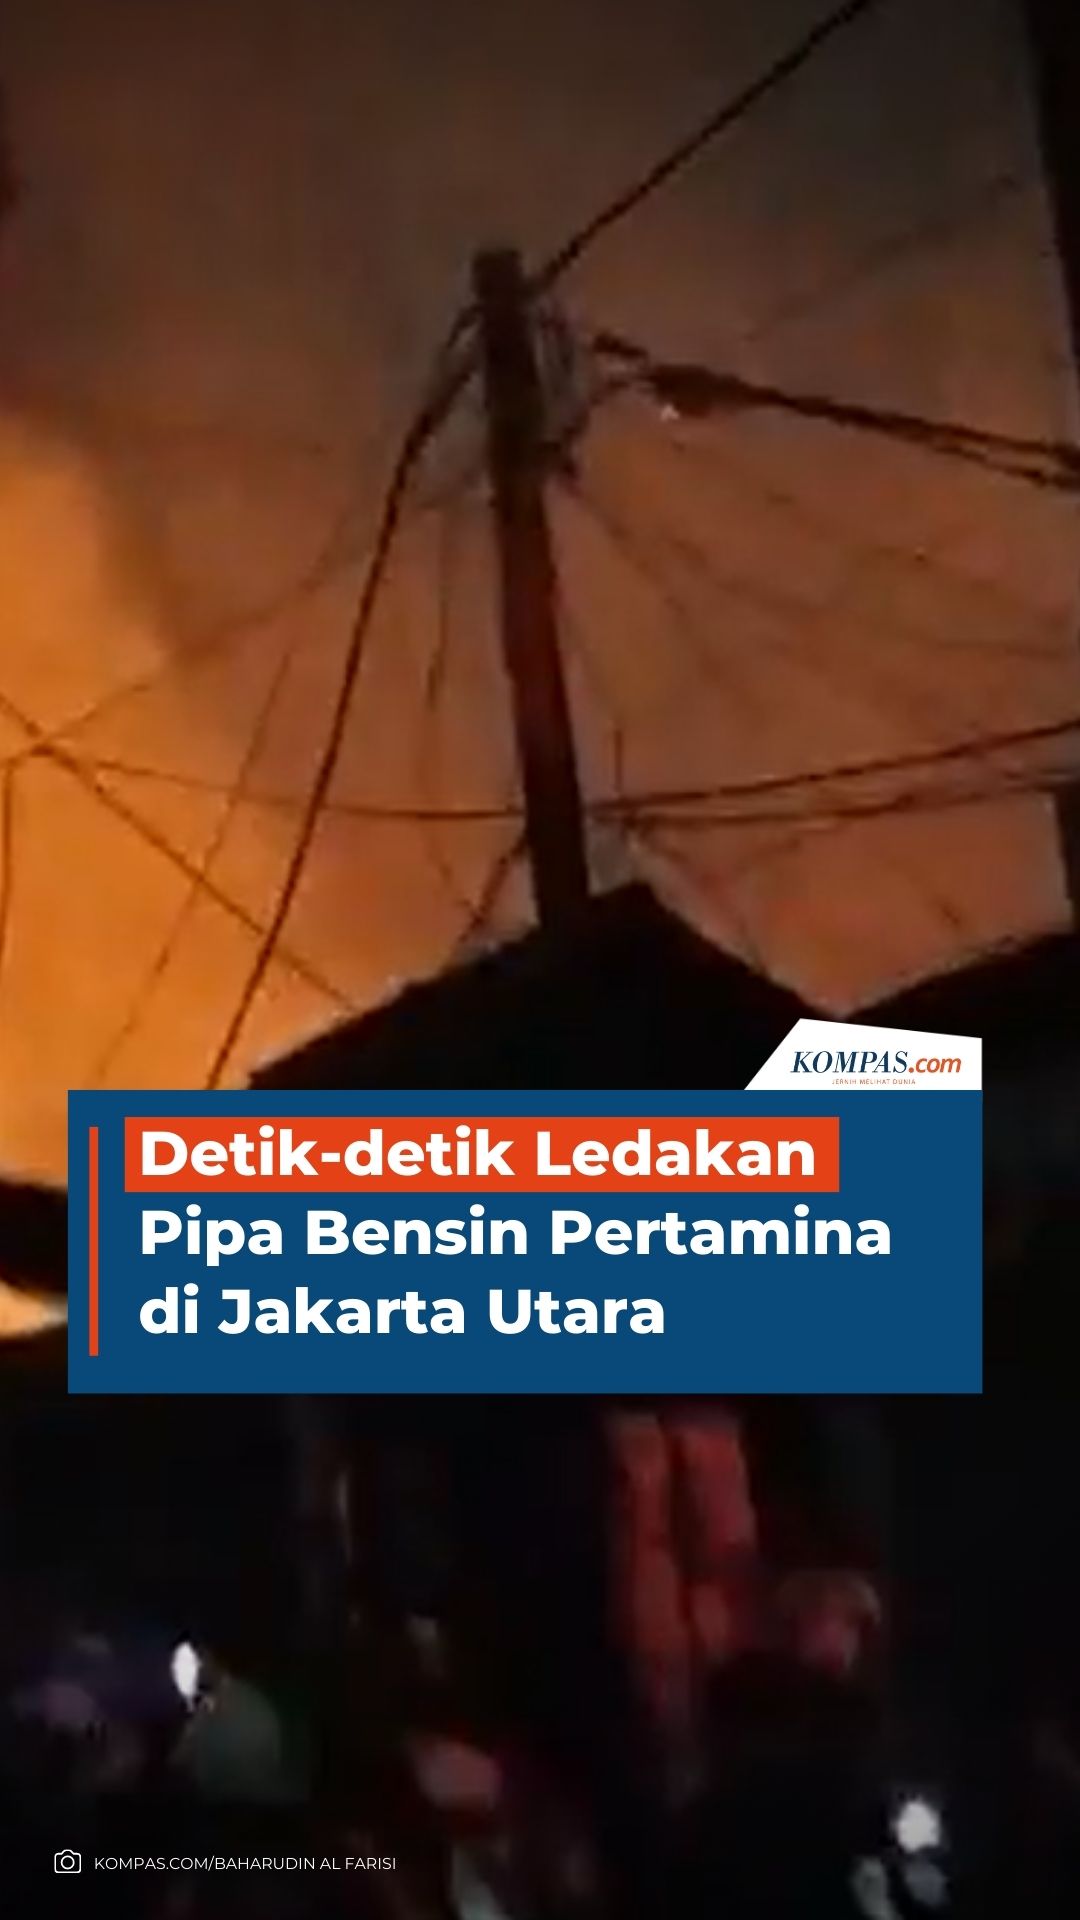 Detik-detik Ledakan Pipa Bensin Pertamina di Jakarta Utara